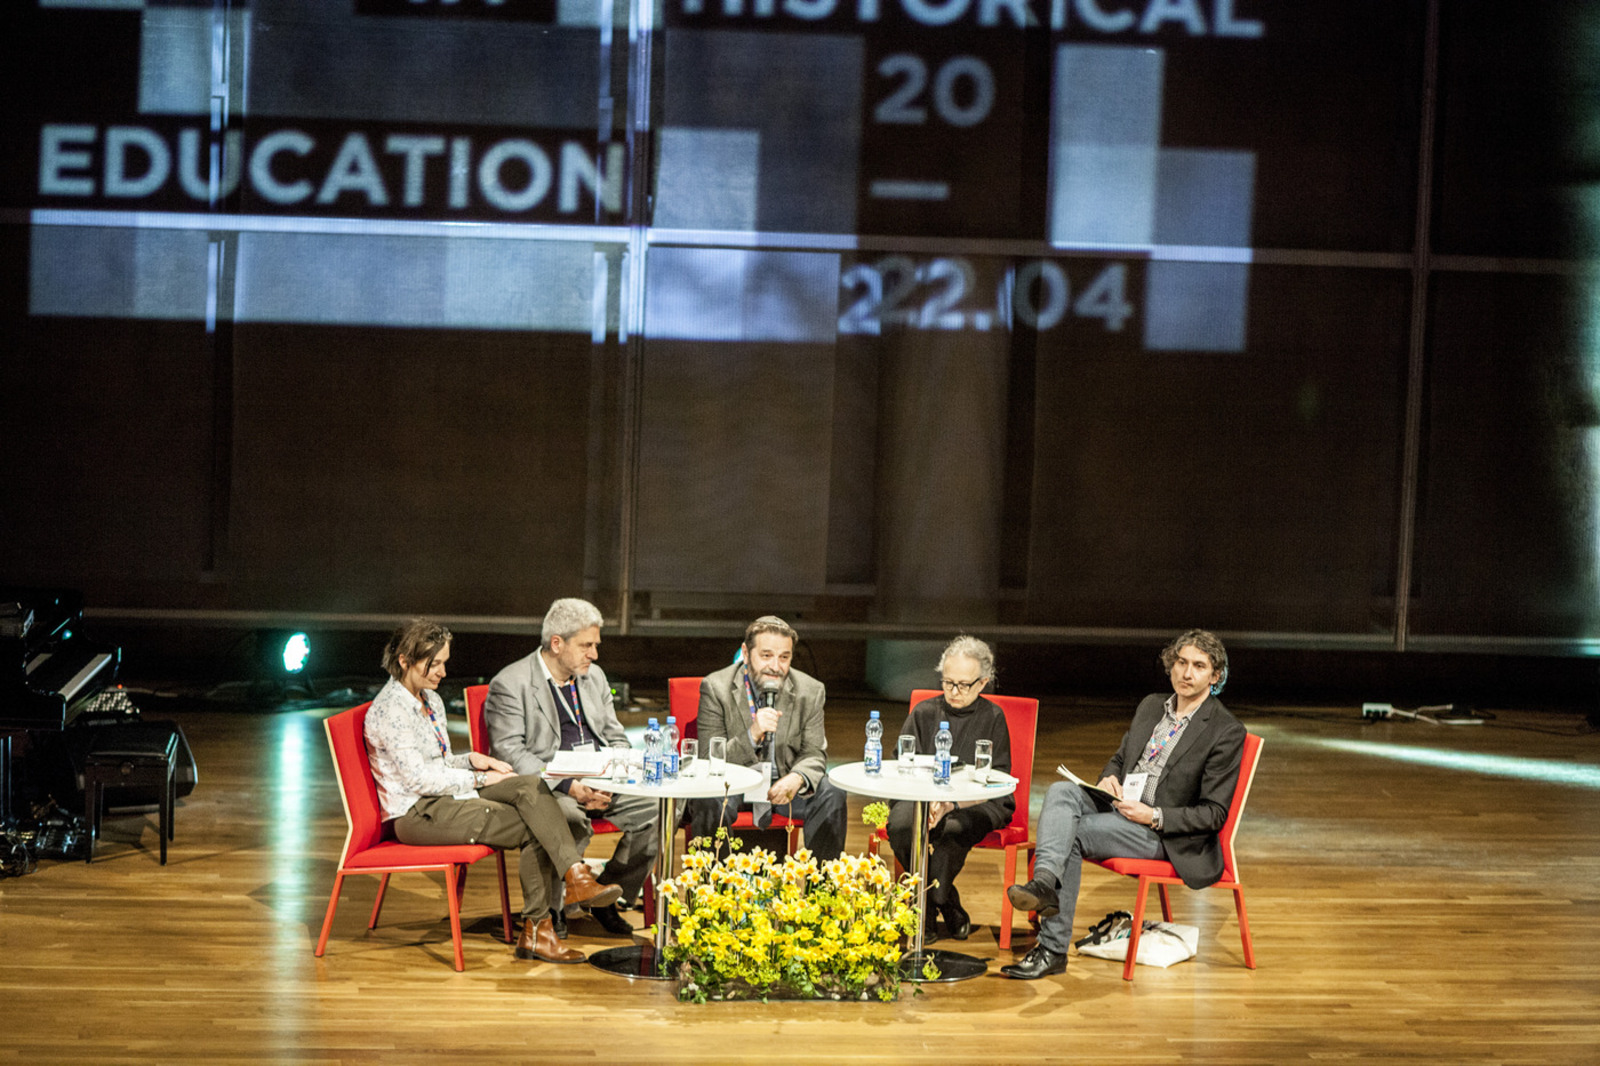 Pięć osób siedzi na krzesłach na scenie podczas konferencji.